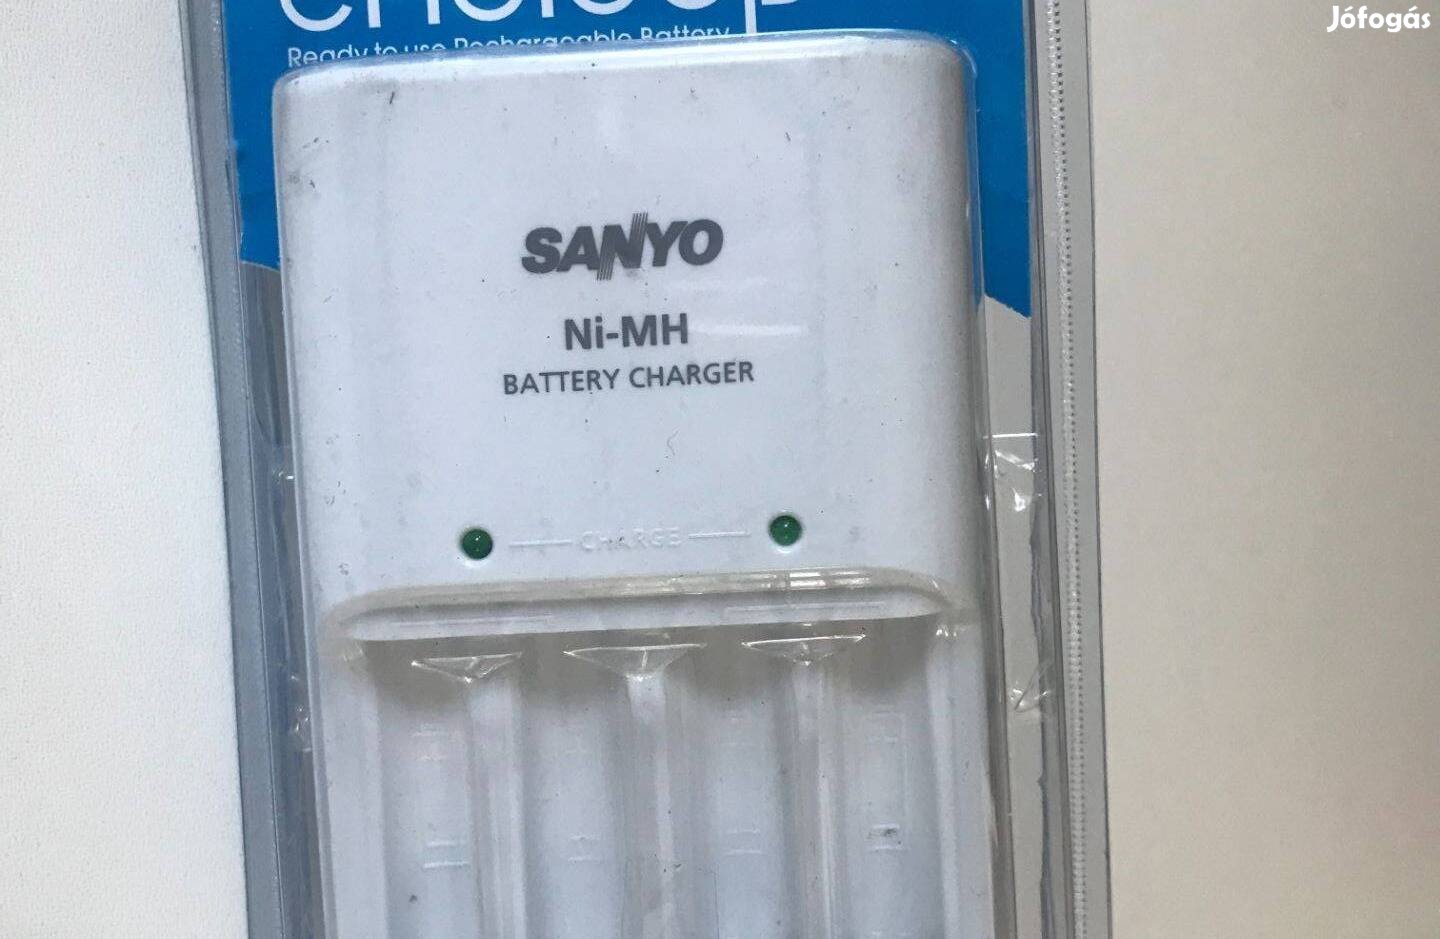 Sanyo fali akkumulátortöltő